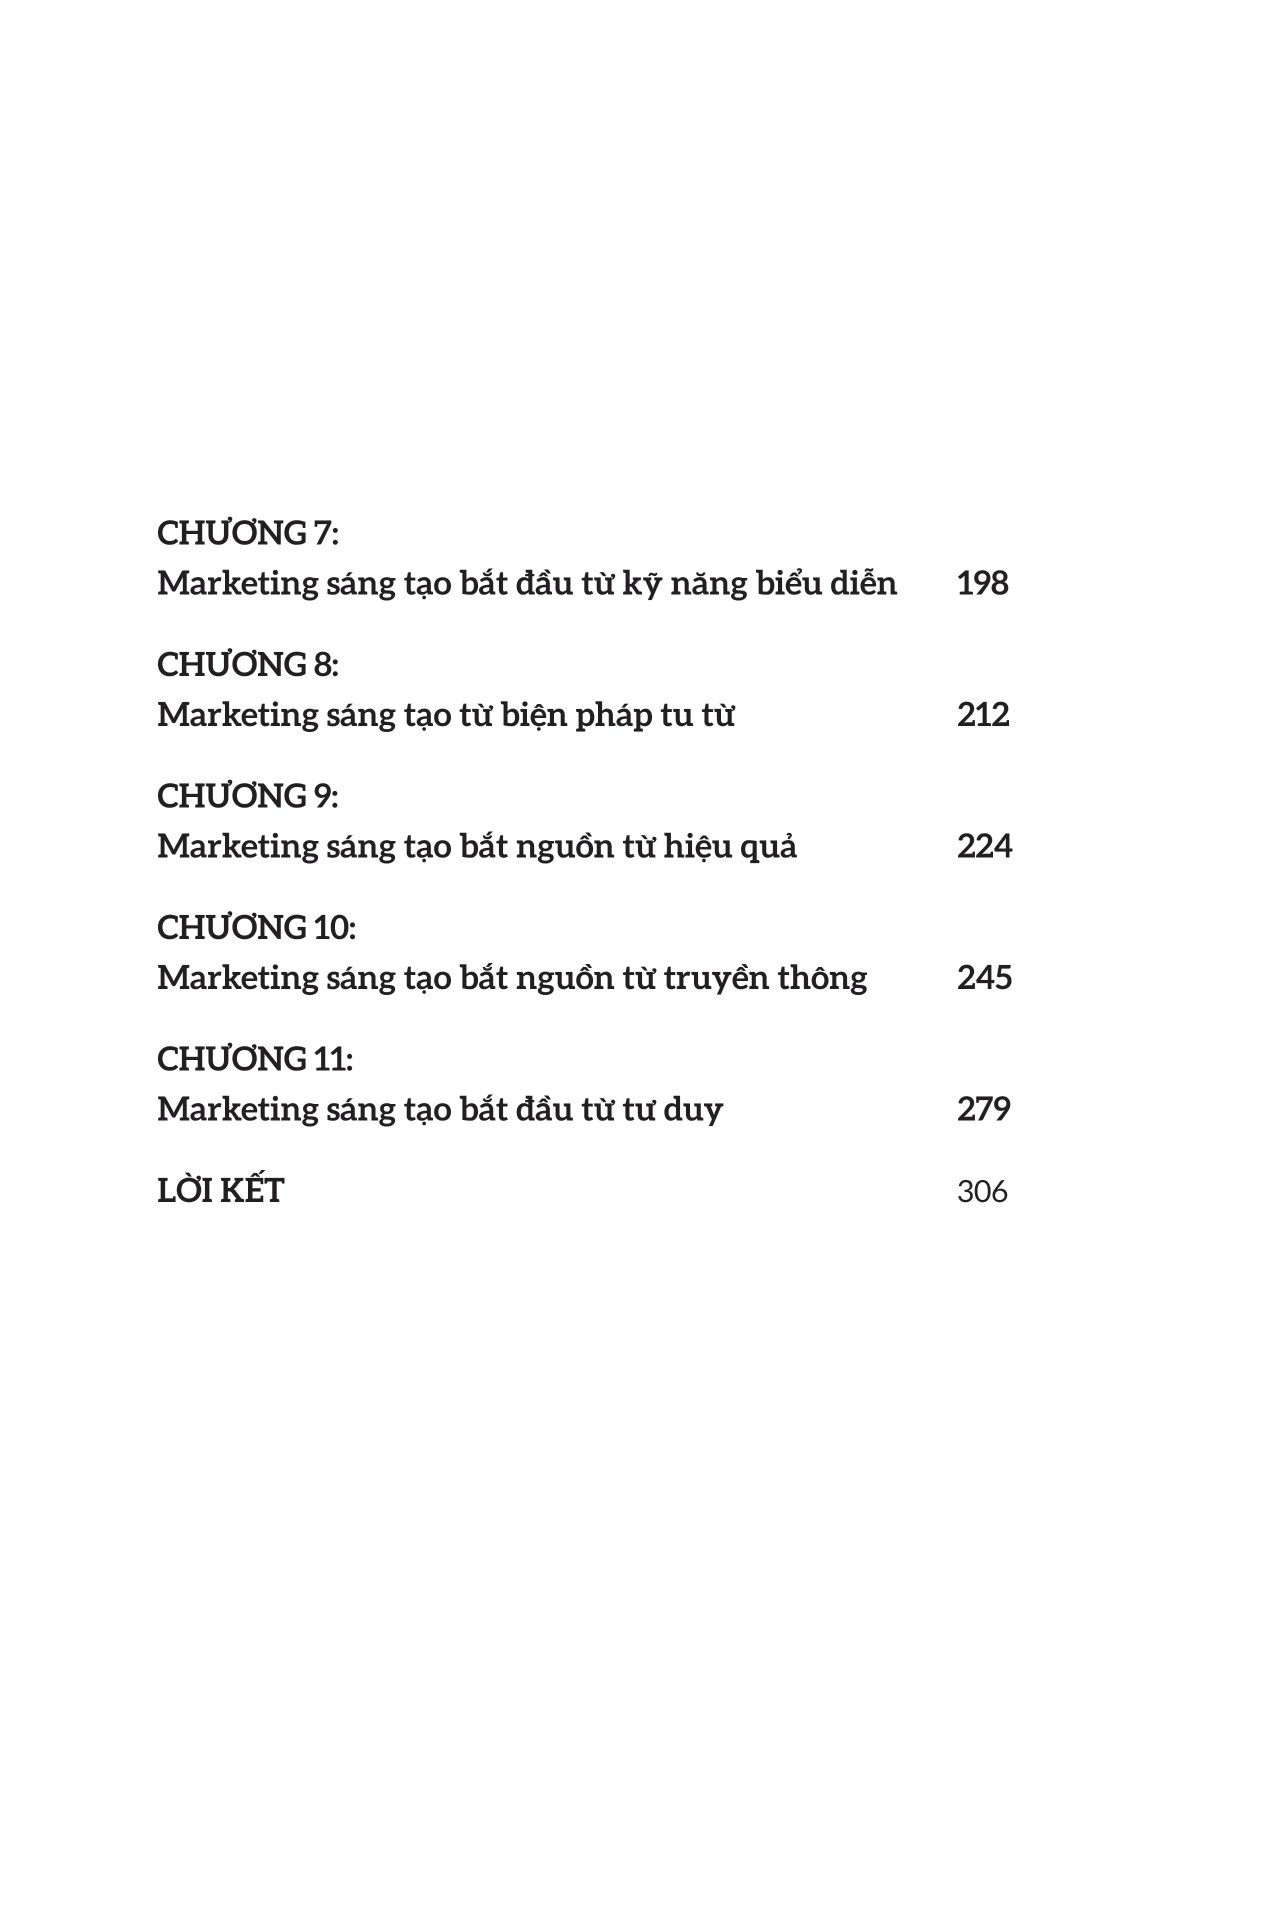 168 Ý Tưởng Vàng Cho Marketing Sáng Tạo PDF